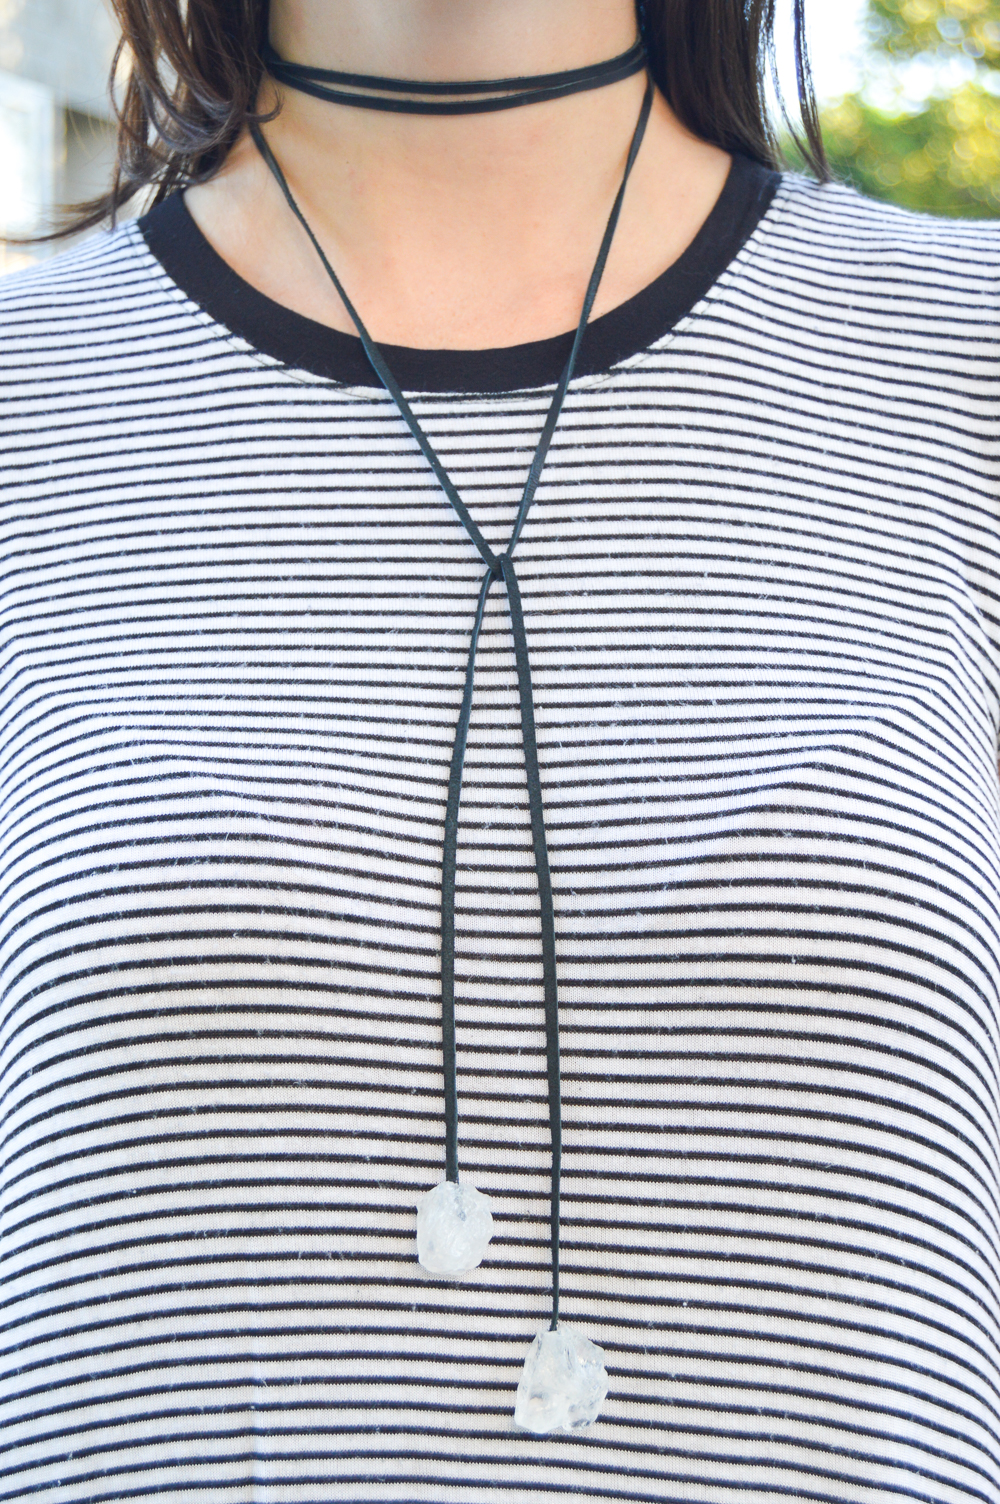 DIY Gem Choker Necklace | Club Crafted